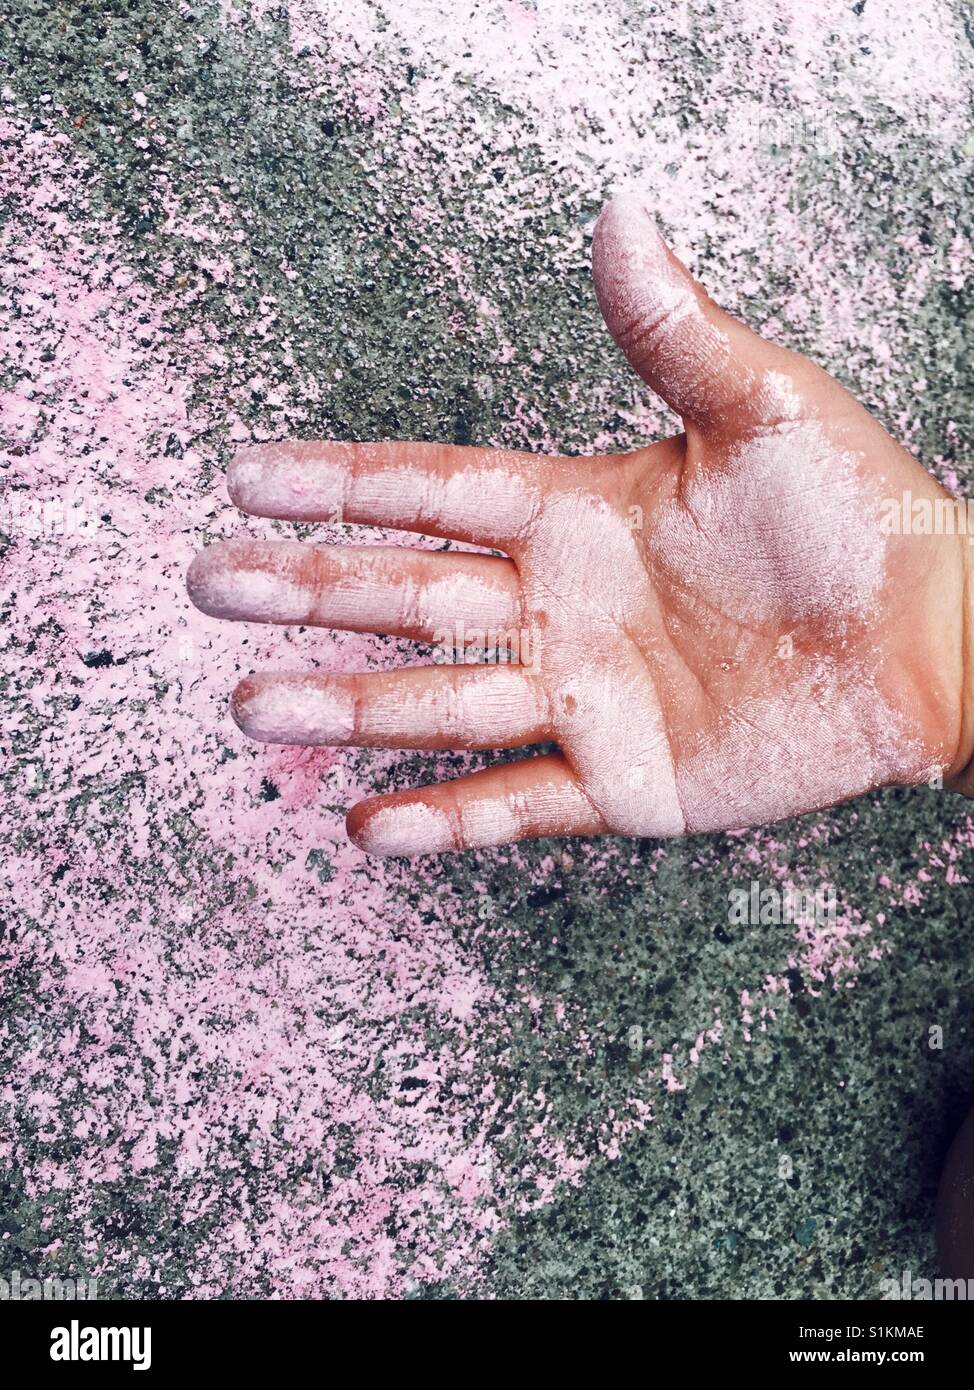 6 Jahre altes Kind Hand mit rosa Kreide beschmiert Stockfoto